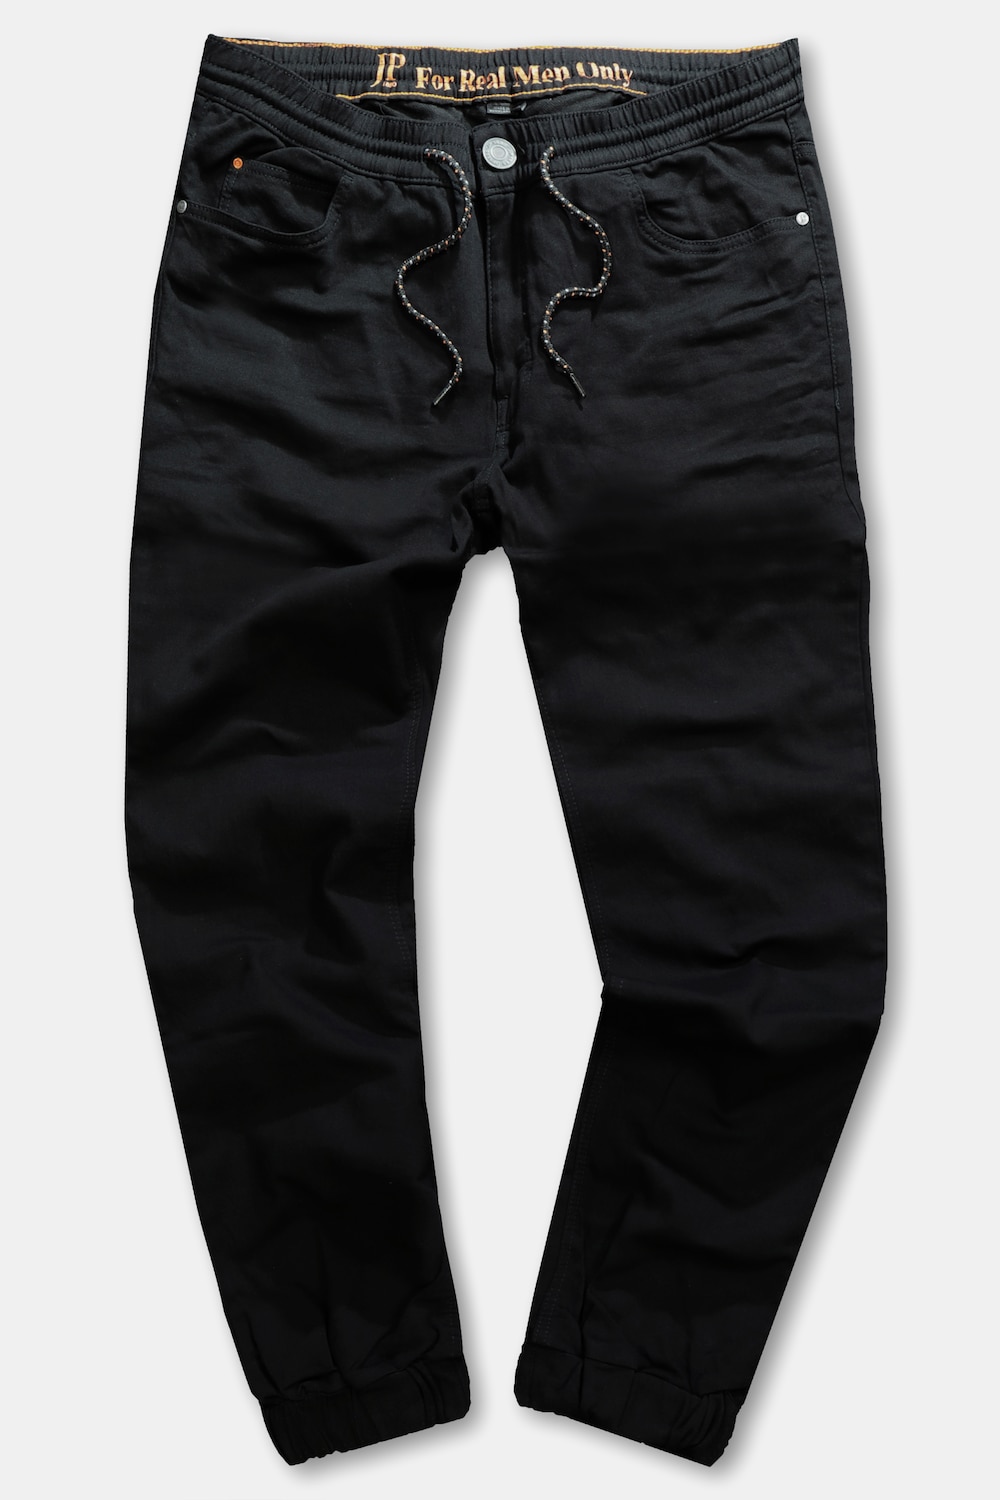 Jeans FLEXNAMIC®, Große Größen, Herren, schwarz, Größe: XL, Baumwolle/Polyester, JP1880